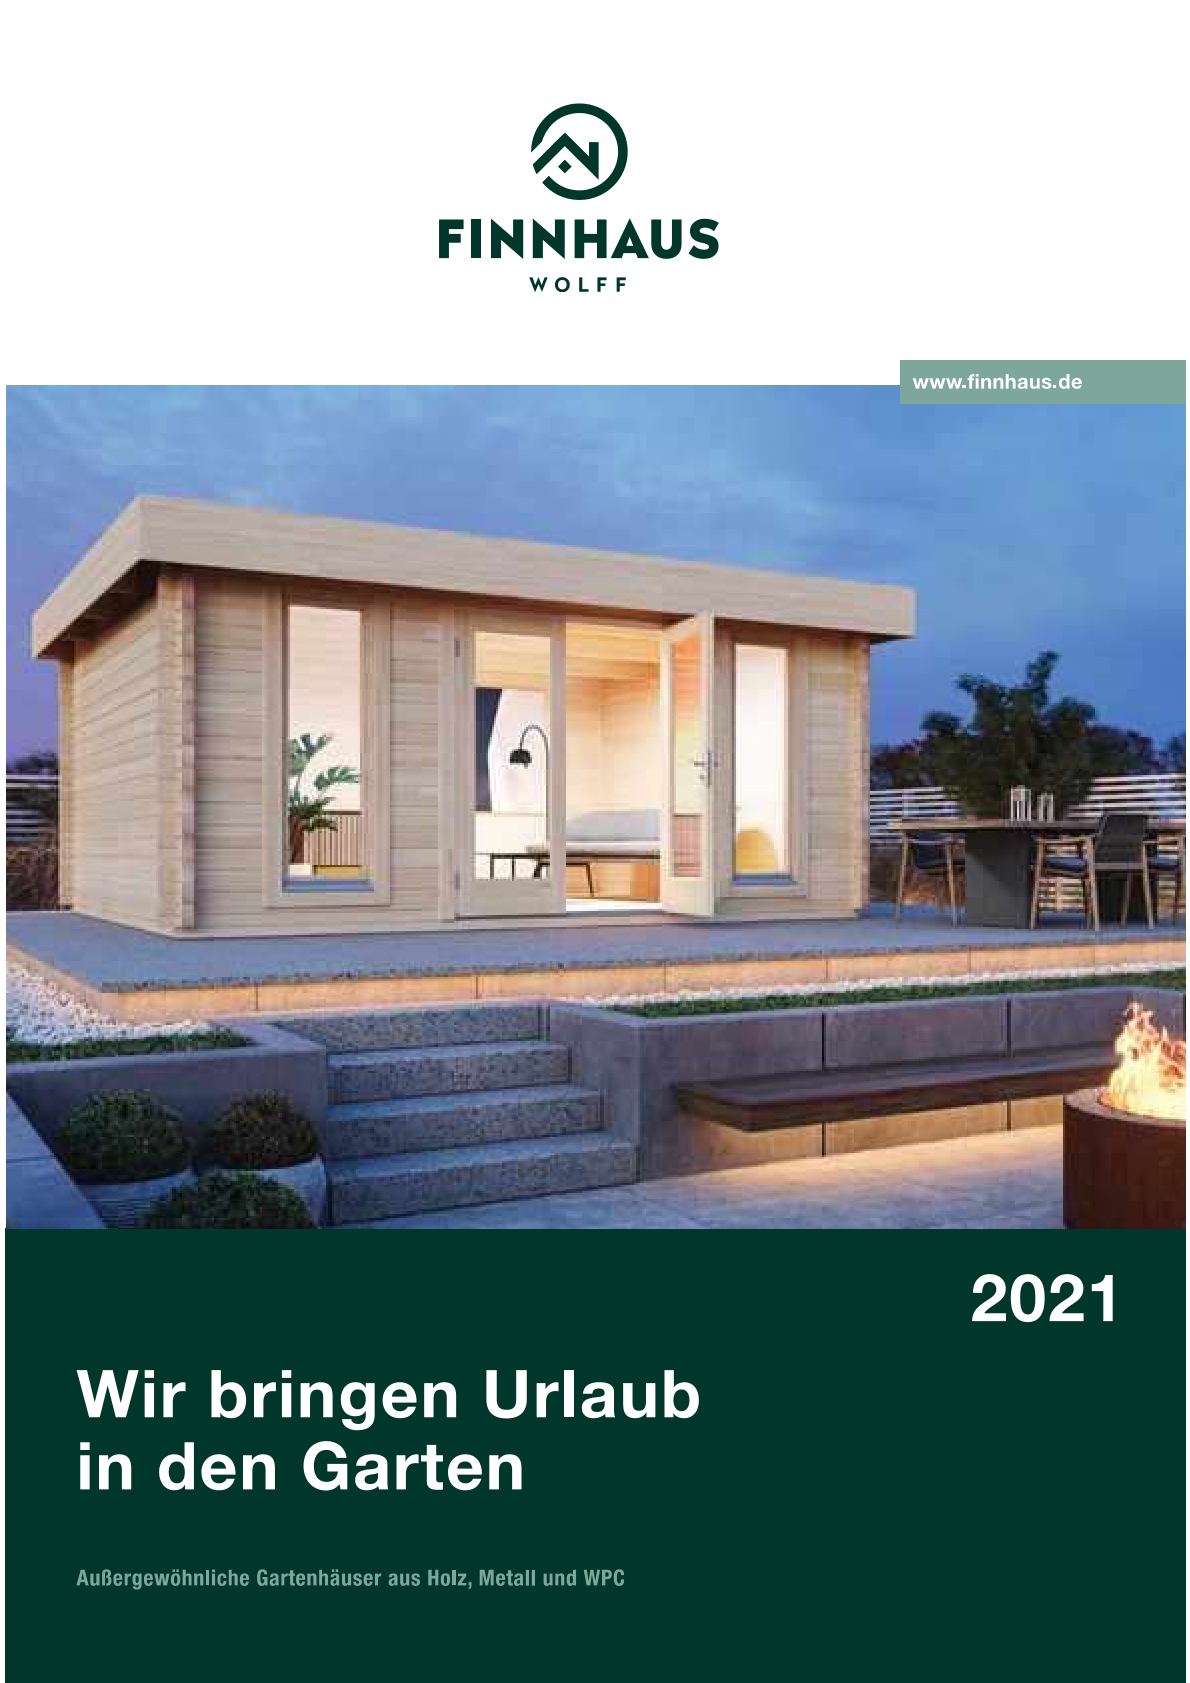 Finnhaus Wolff Gartenkatalog 2021